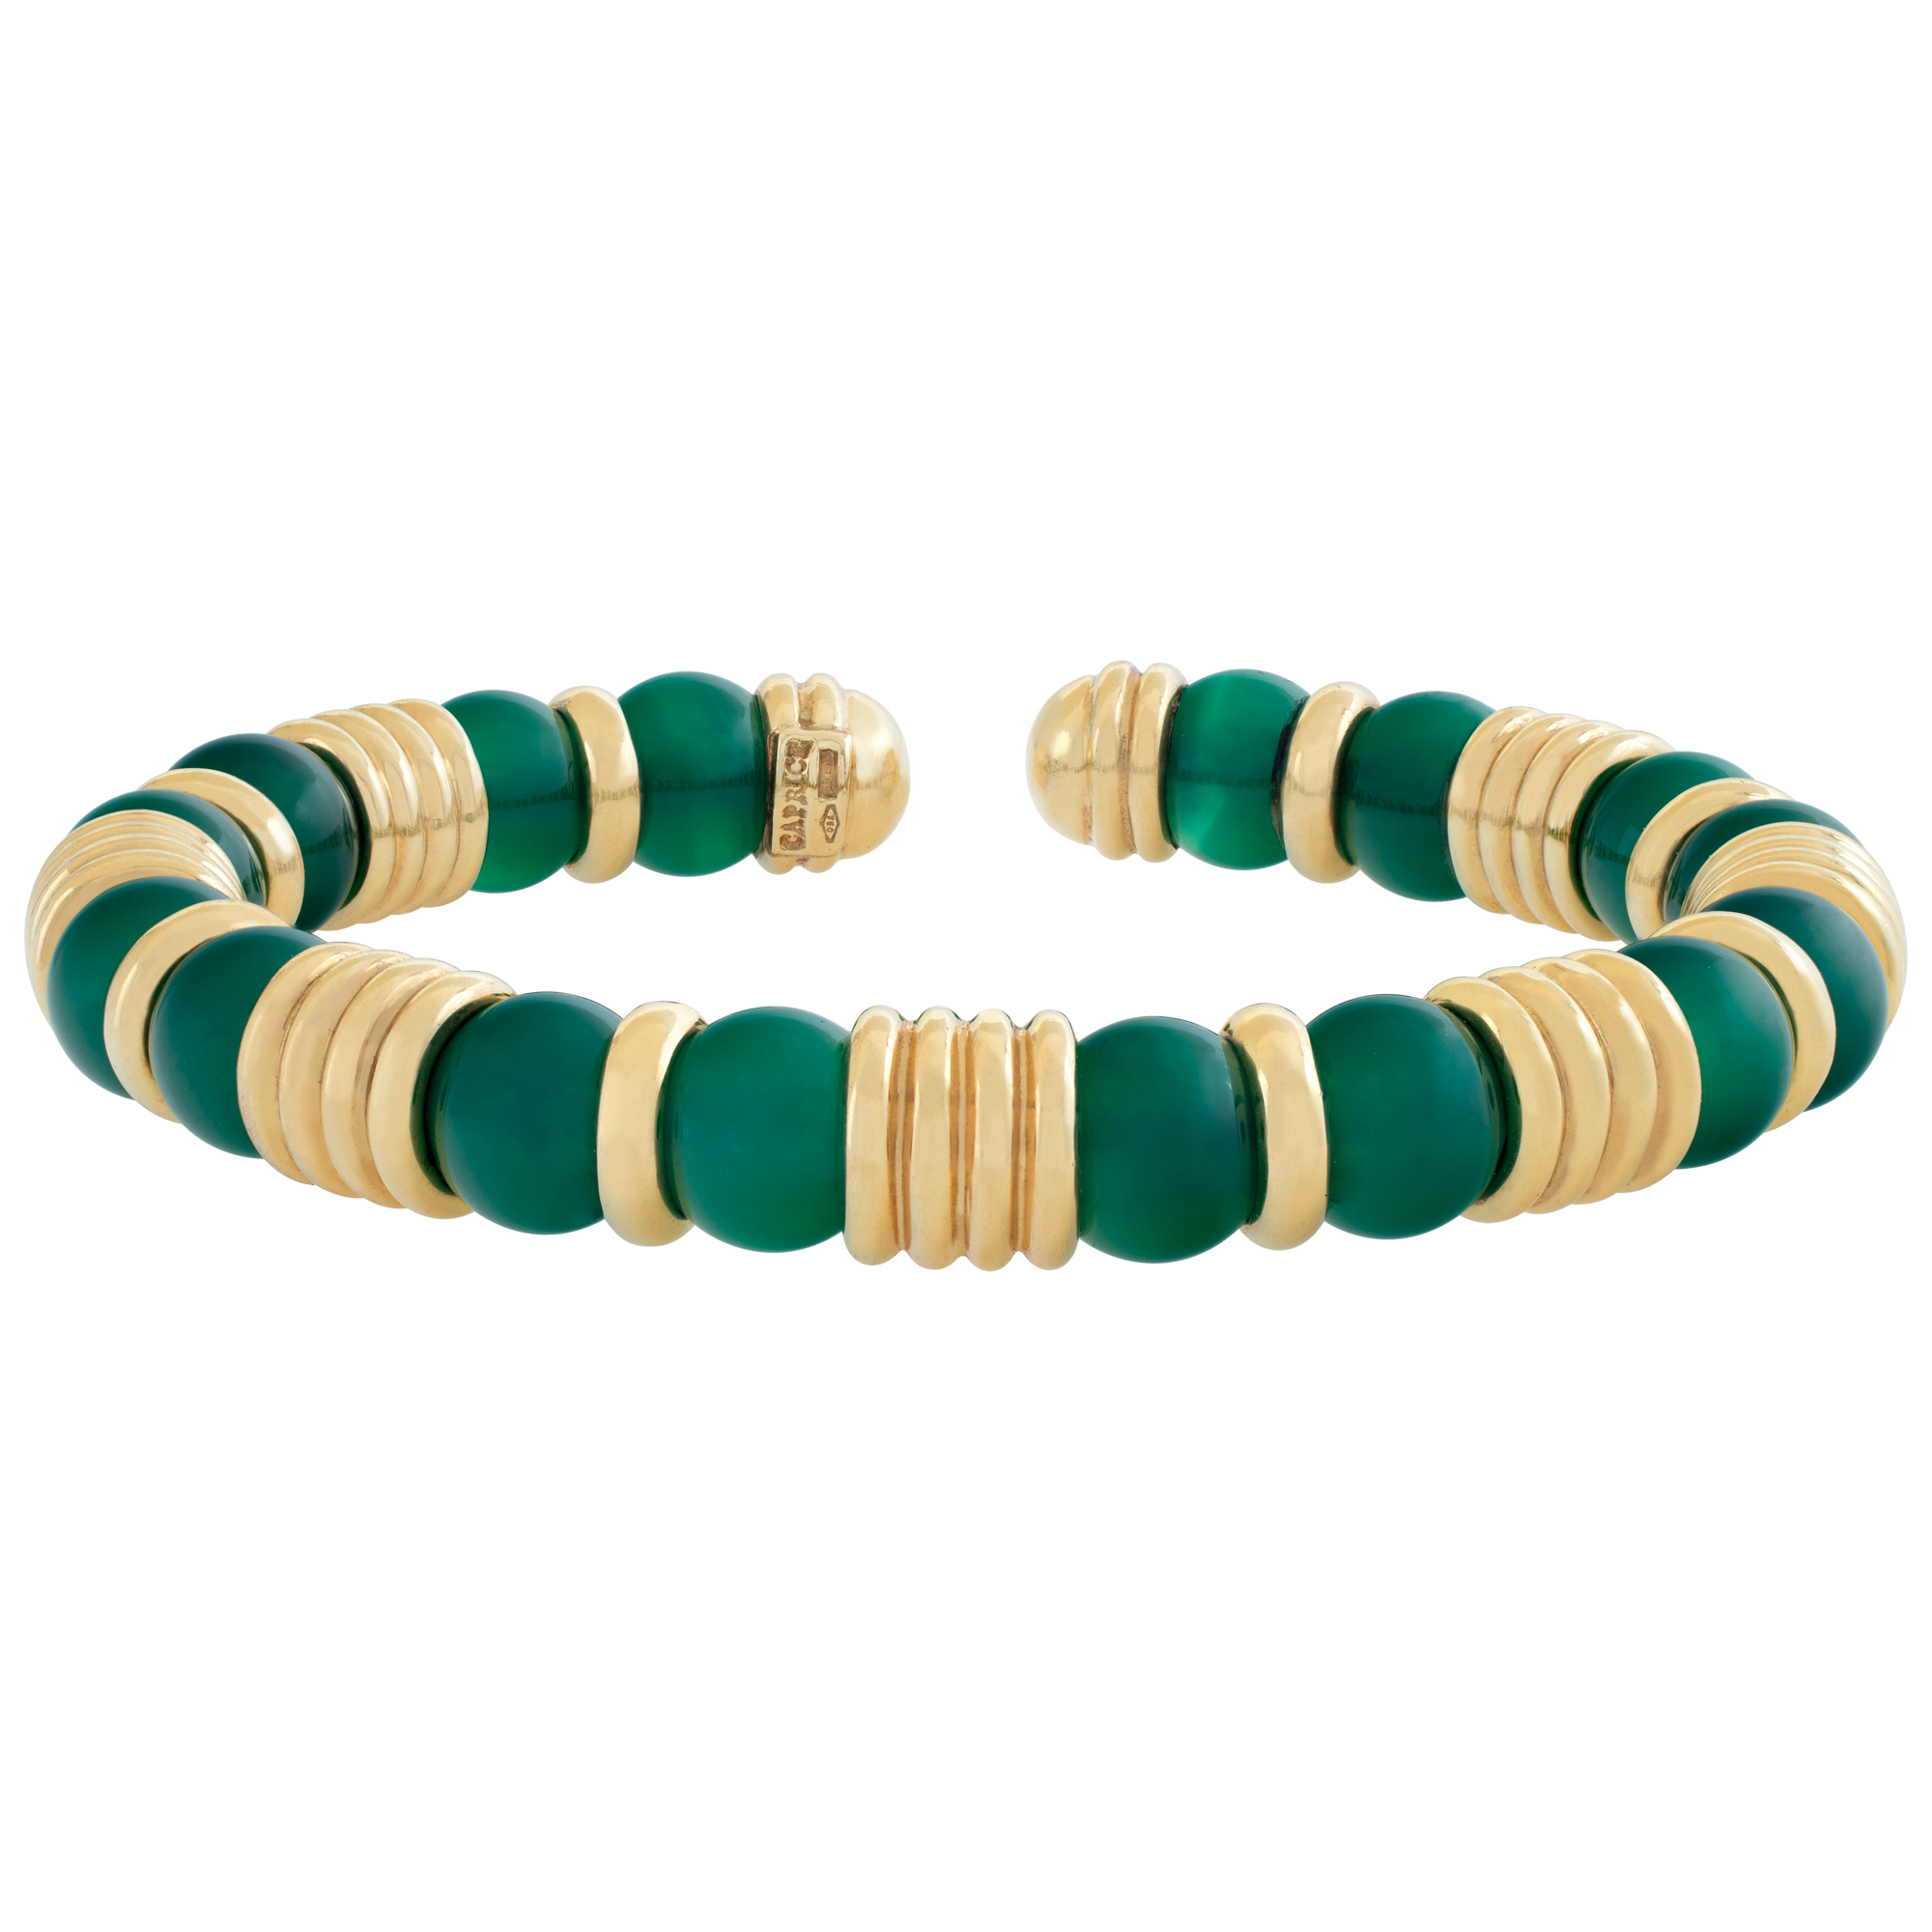 Caprice jade bracelet in 18k image 1